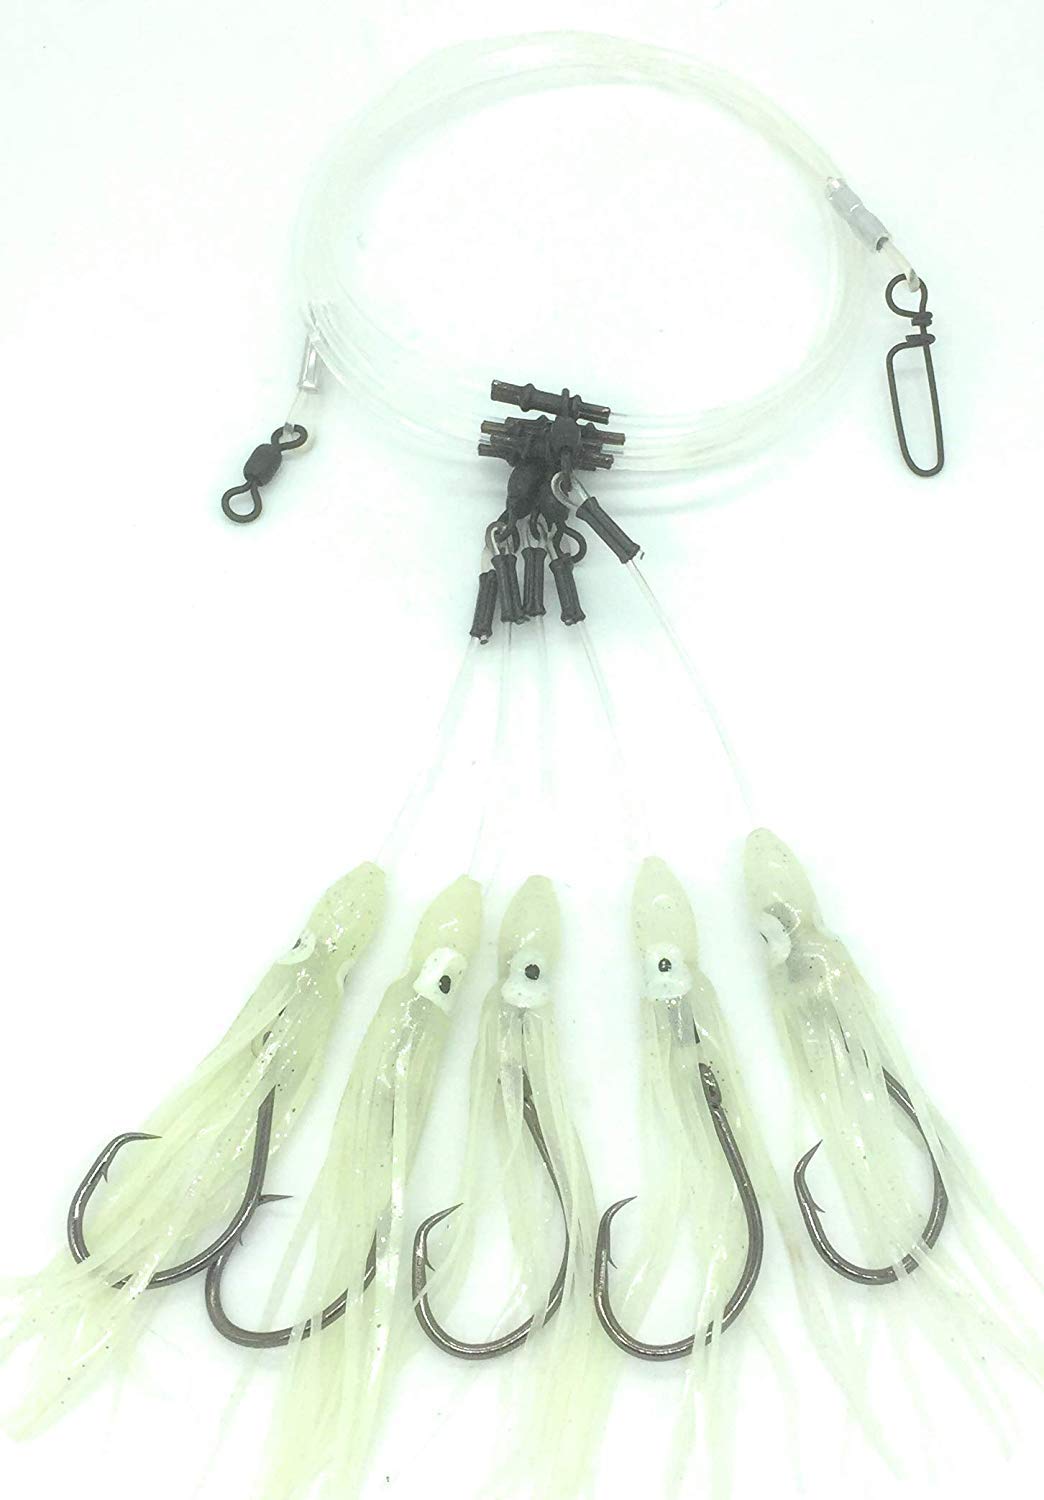 Glow Squid Deep Drop Tilefish Rig, Excellent for Deep Drop Fishing